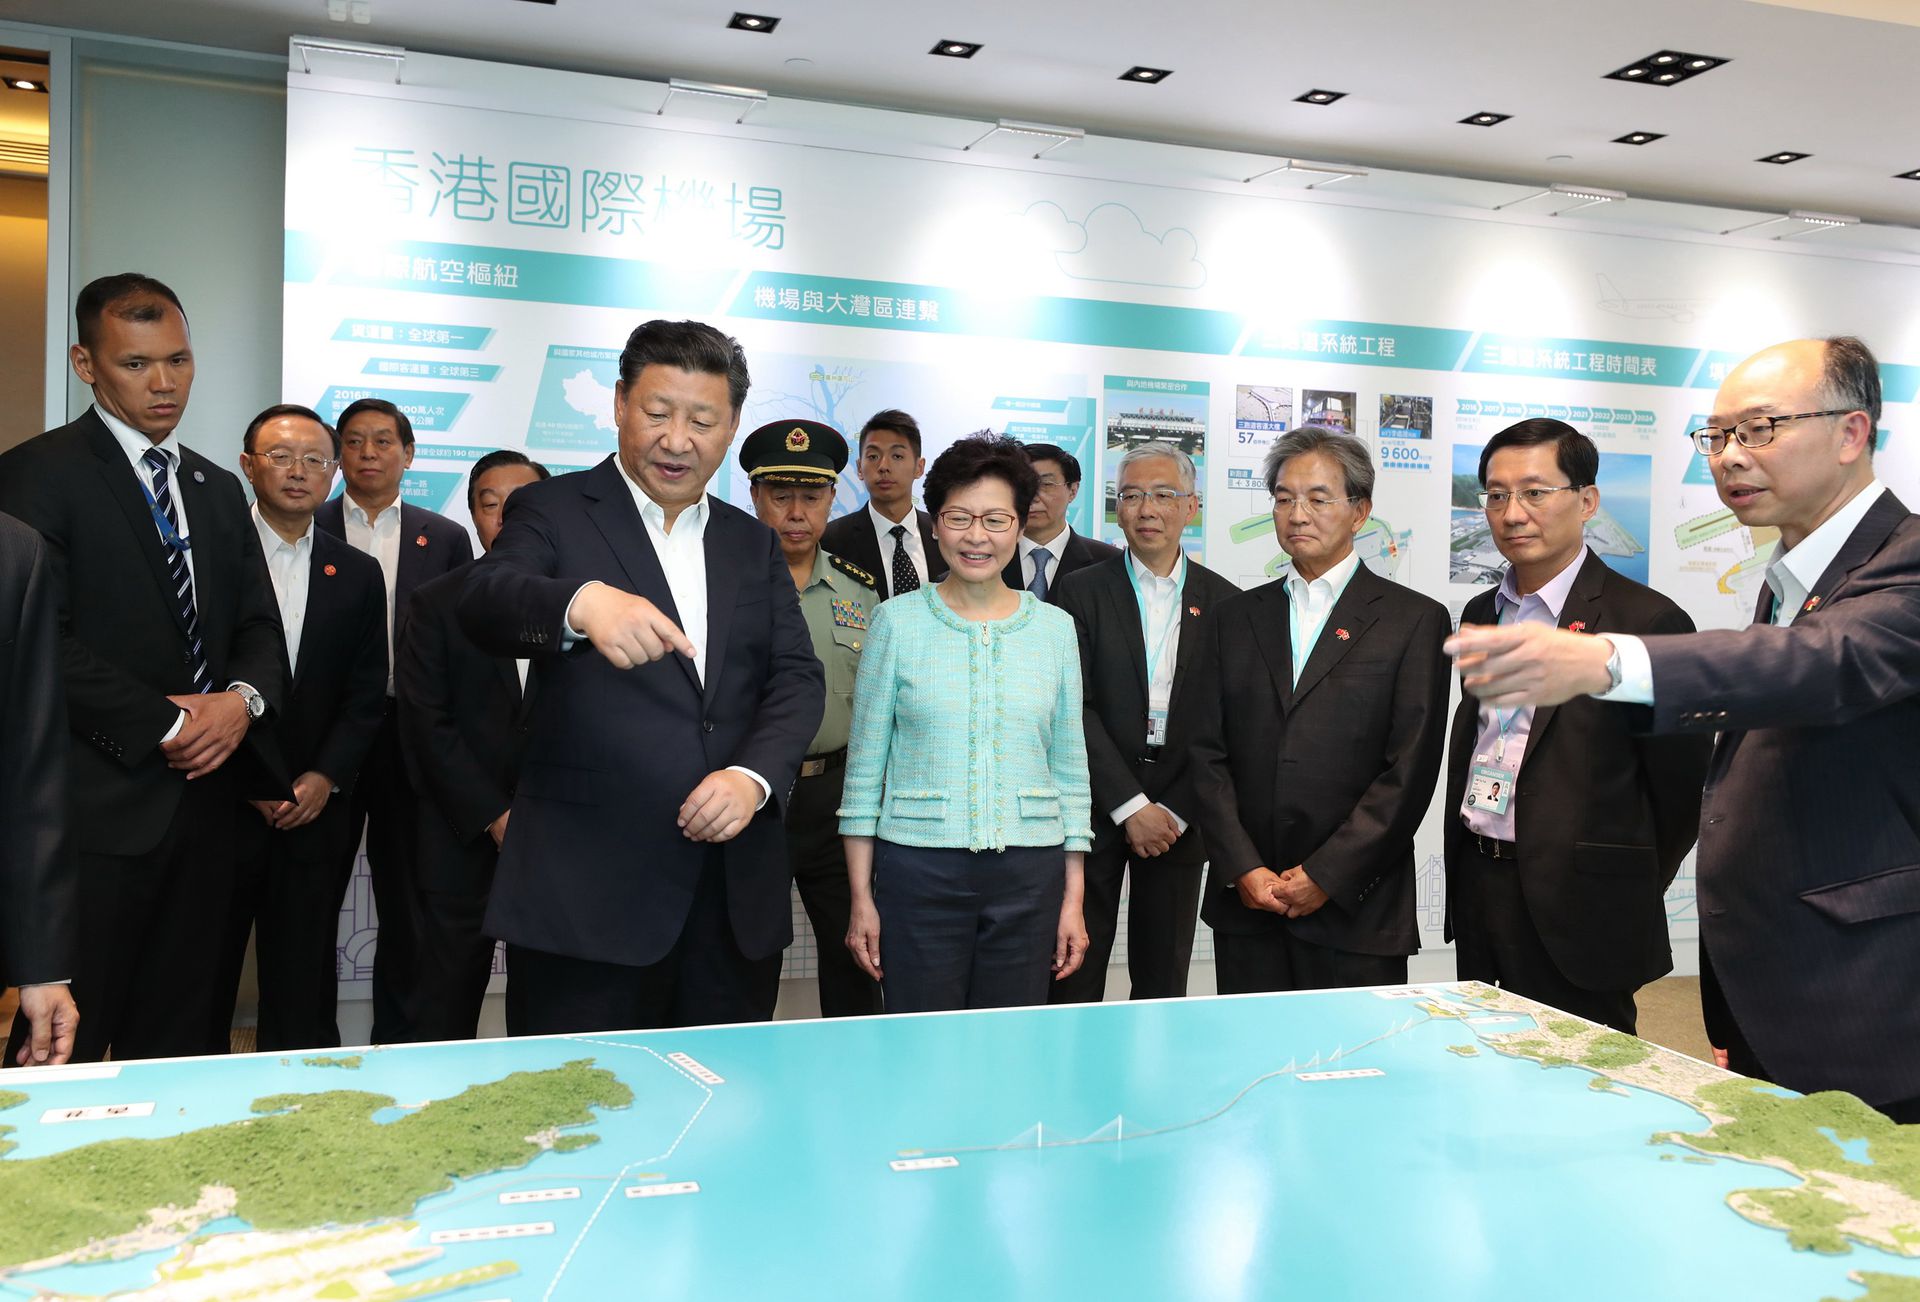 中国的粤港澳大湾区战略是香港后续发展的最大机会。（新华社）